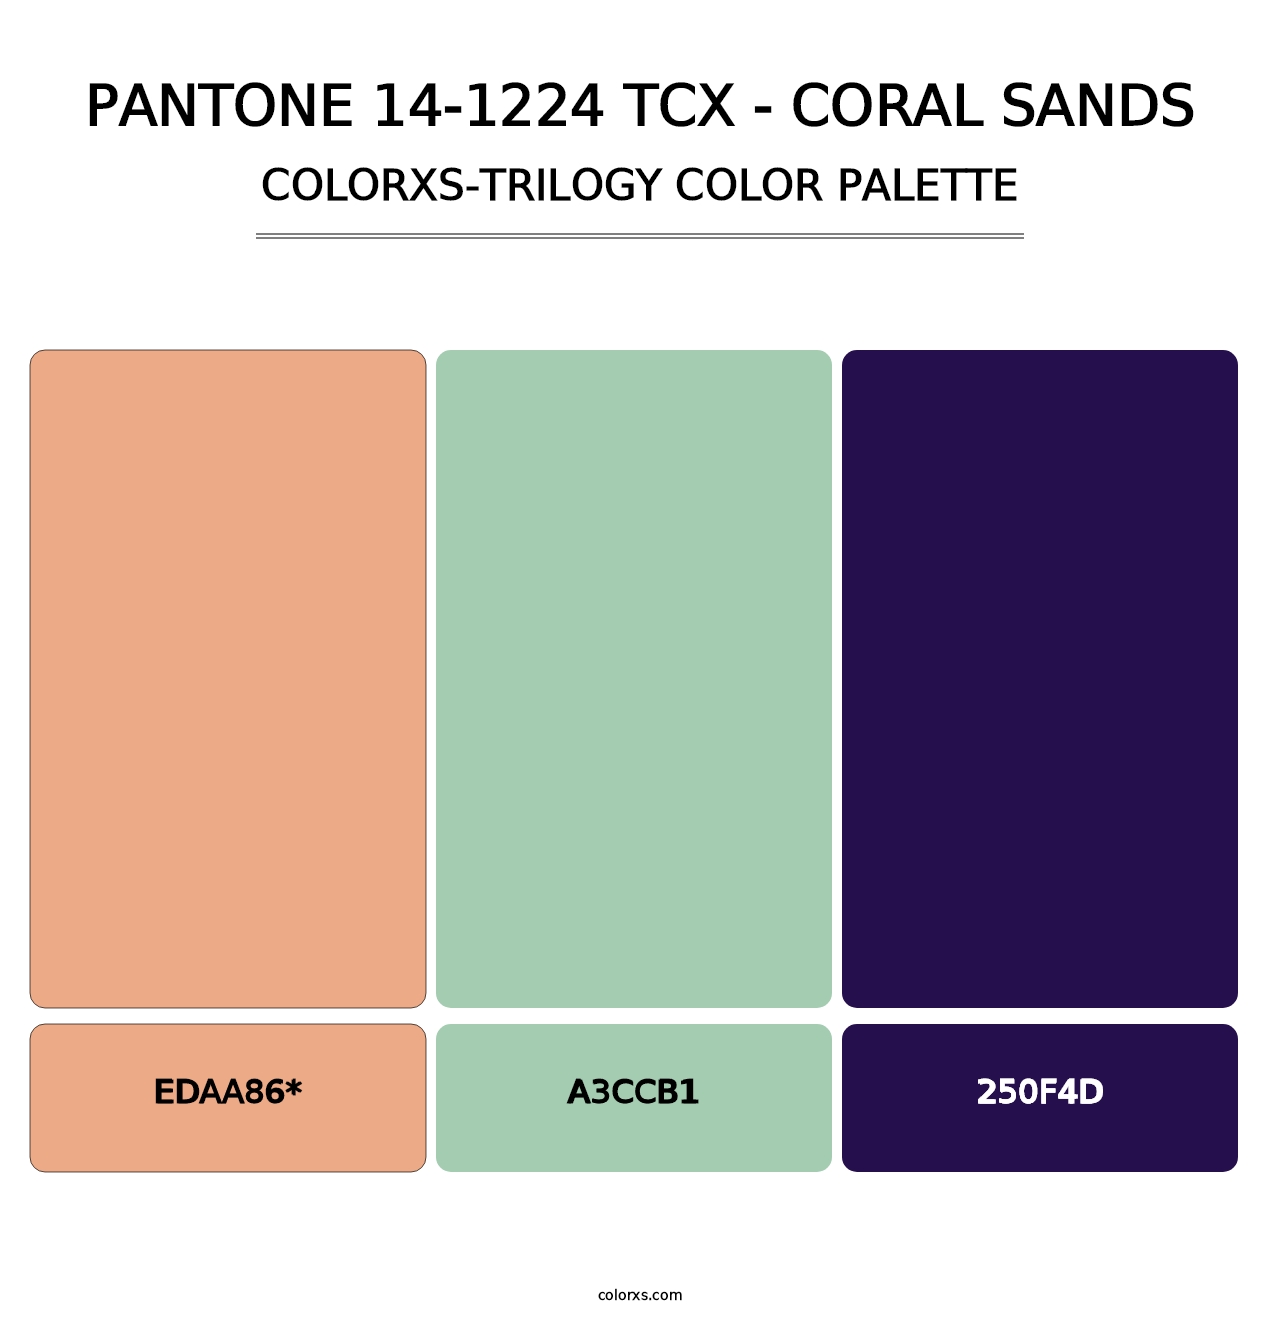 PANTONE 14-1224 TCX - Coral Sands - Colorxs Trilogy Palette